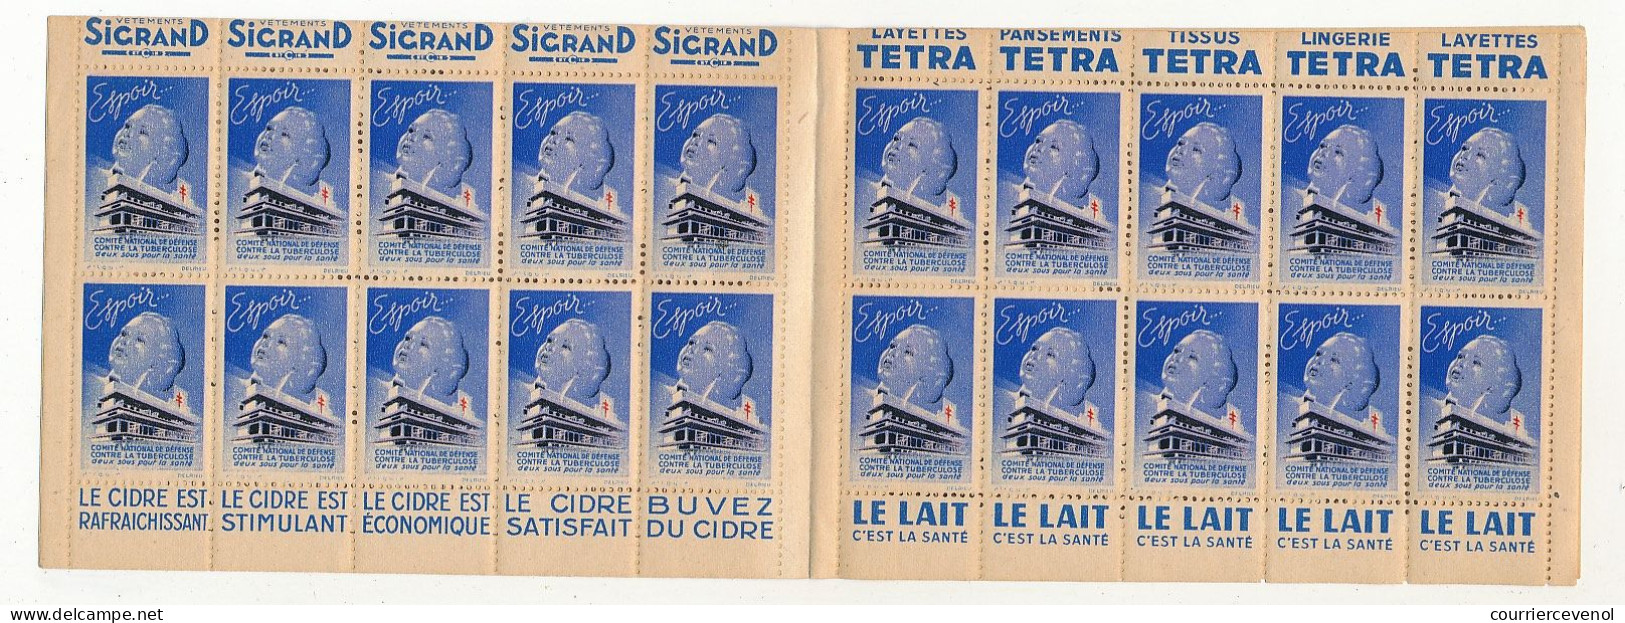 Carnet Anti-tuberculeux 1939 - 13ème Campagne - 2 Fr - 20 Timbres à 10c  - Pubs Sigrand, Cidre, Tissus Tetra, Lait... - Blocchi & Libretti